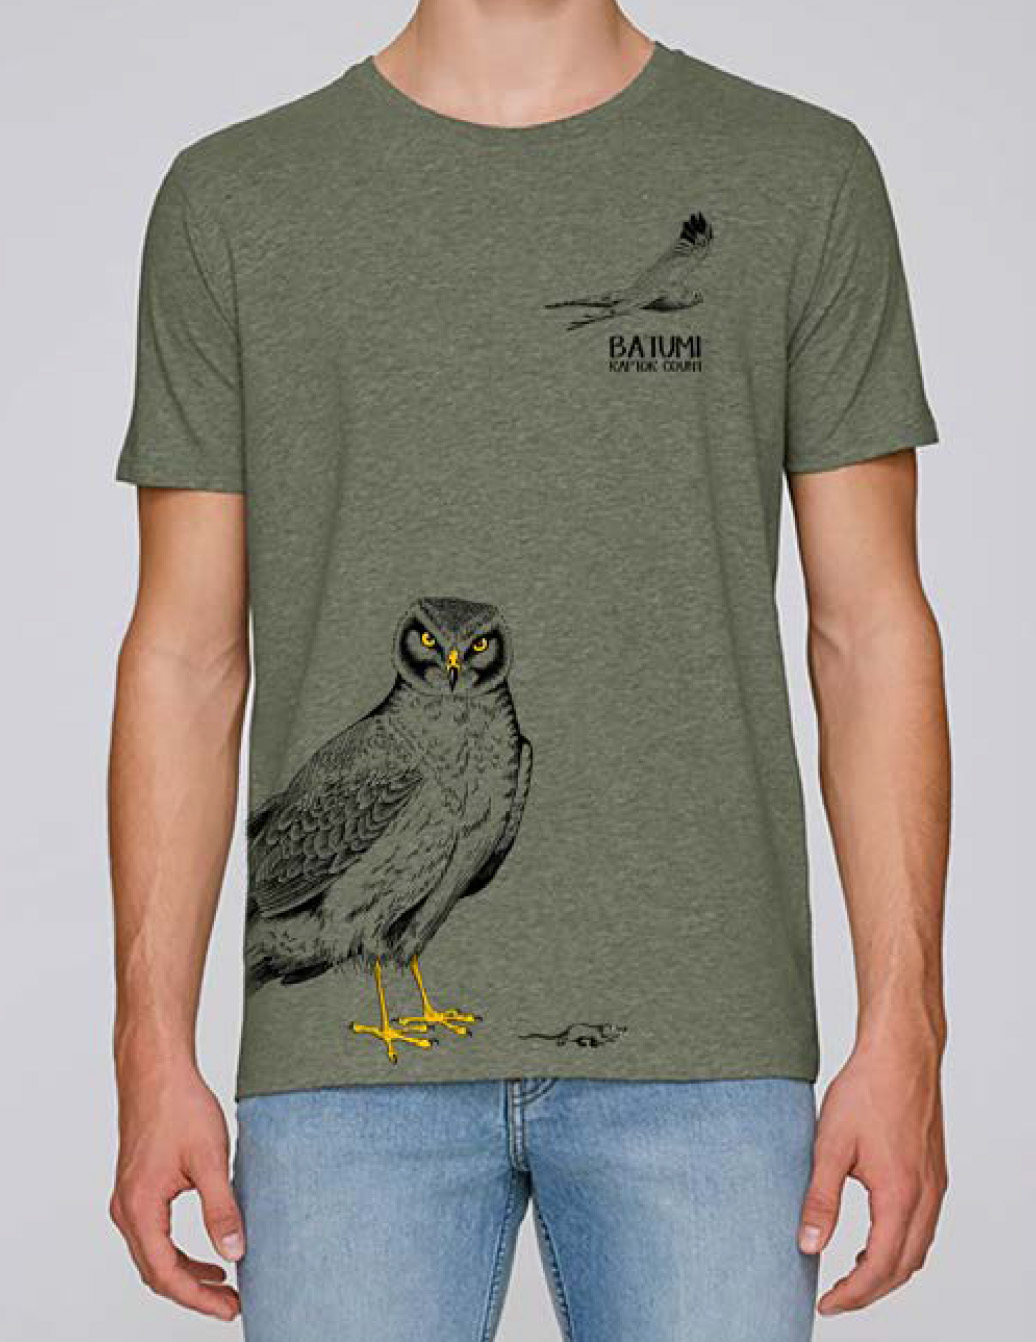 Design de t-shirt pour l'association Batumi Raptor Count - 2019